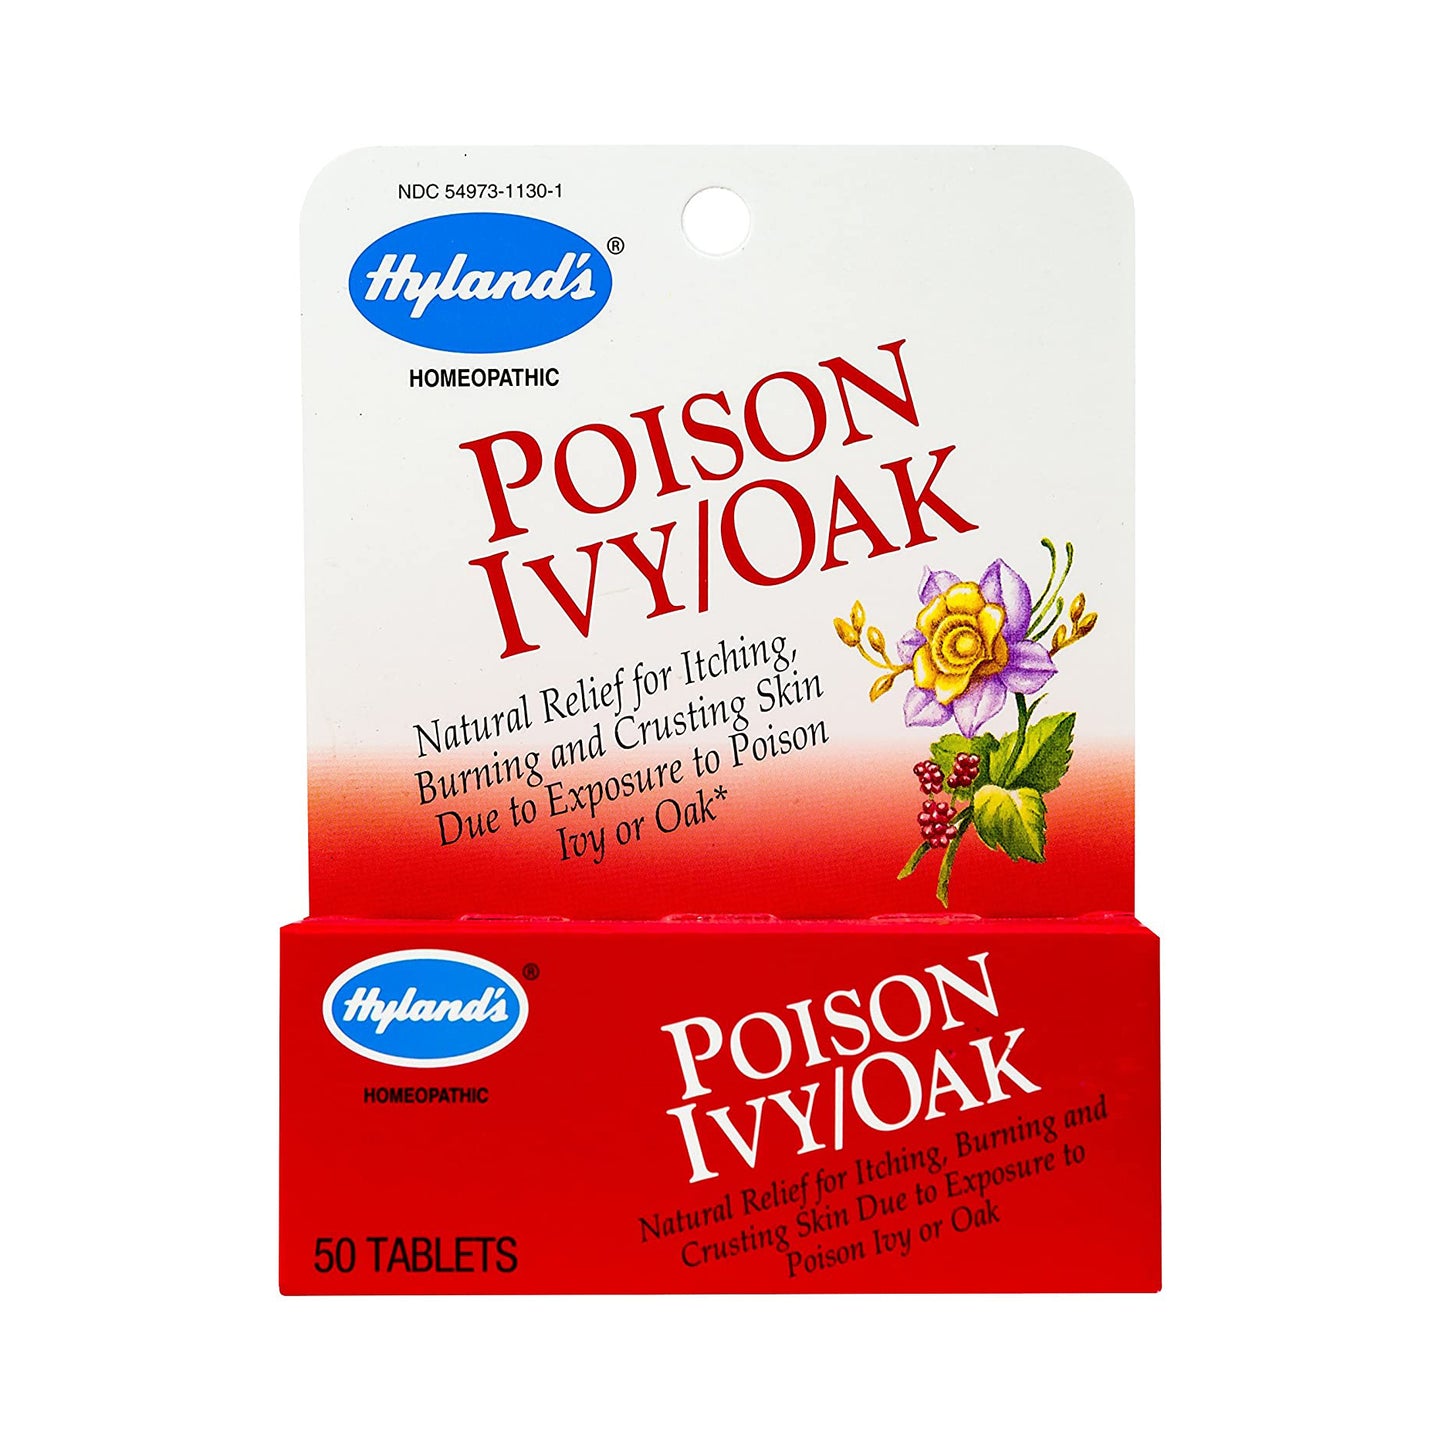 Poison Ivy/Oak 50tabs